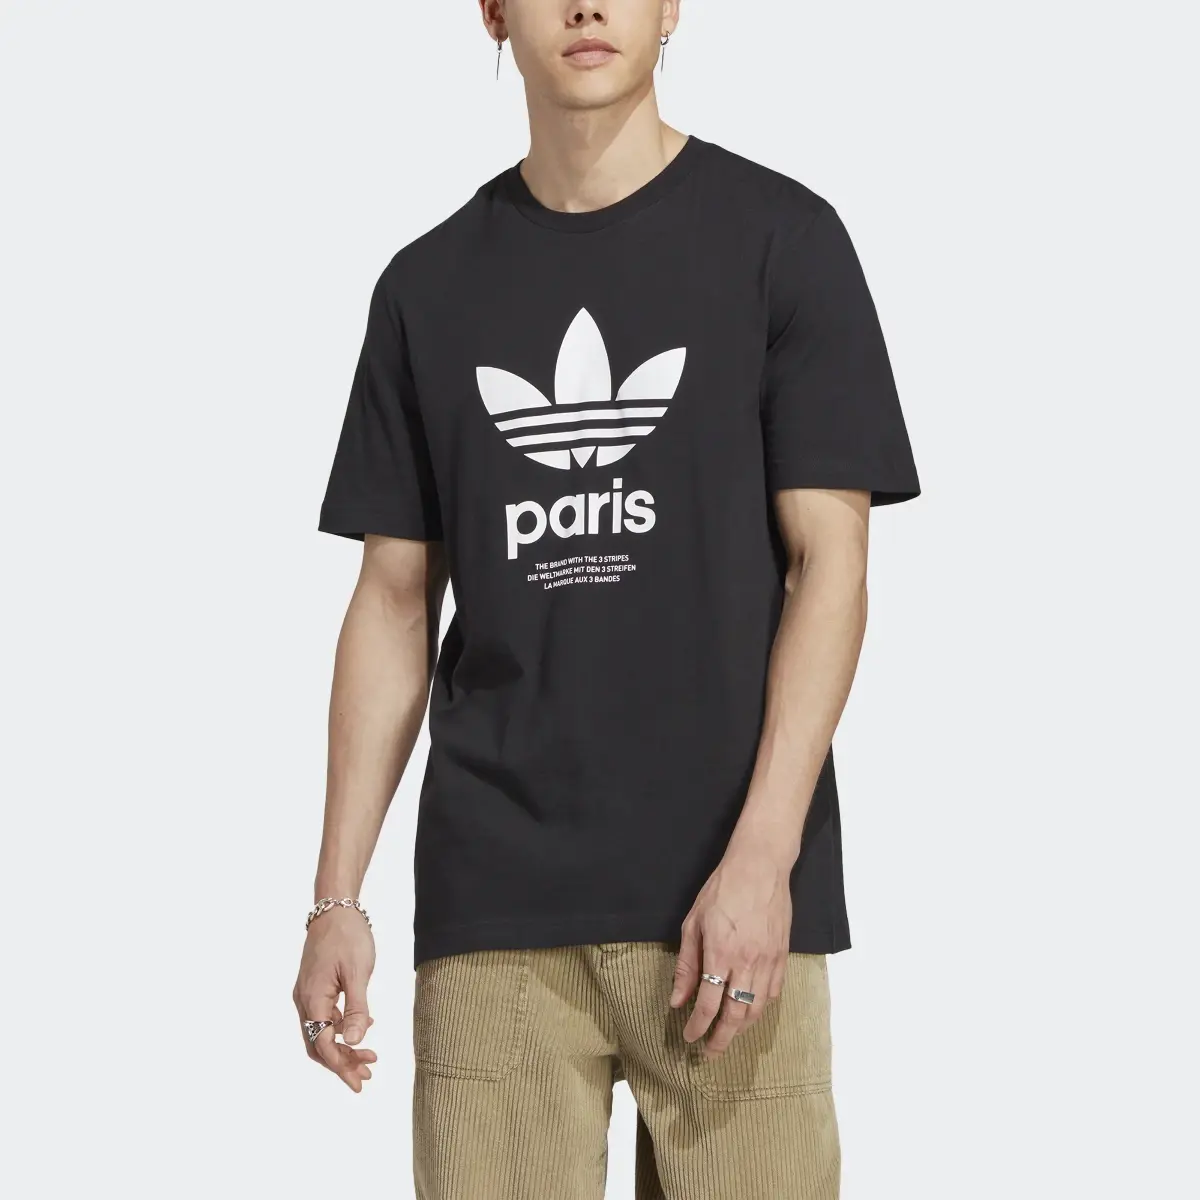 Adidas T-shirt Icone Paris City Originals. 1